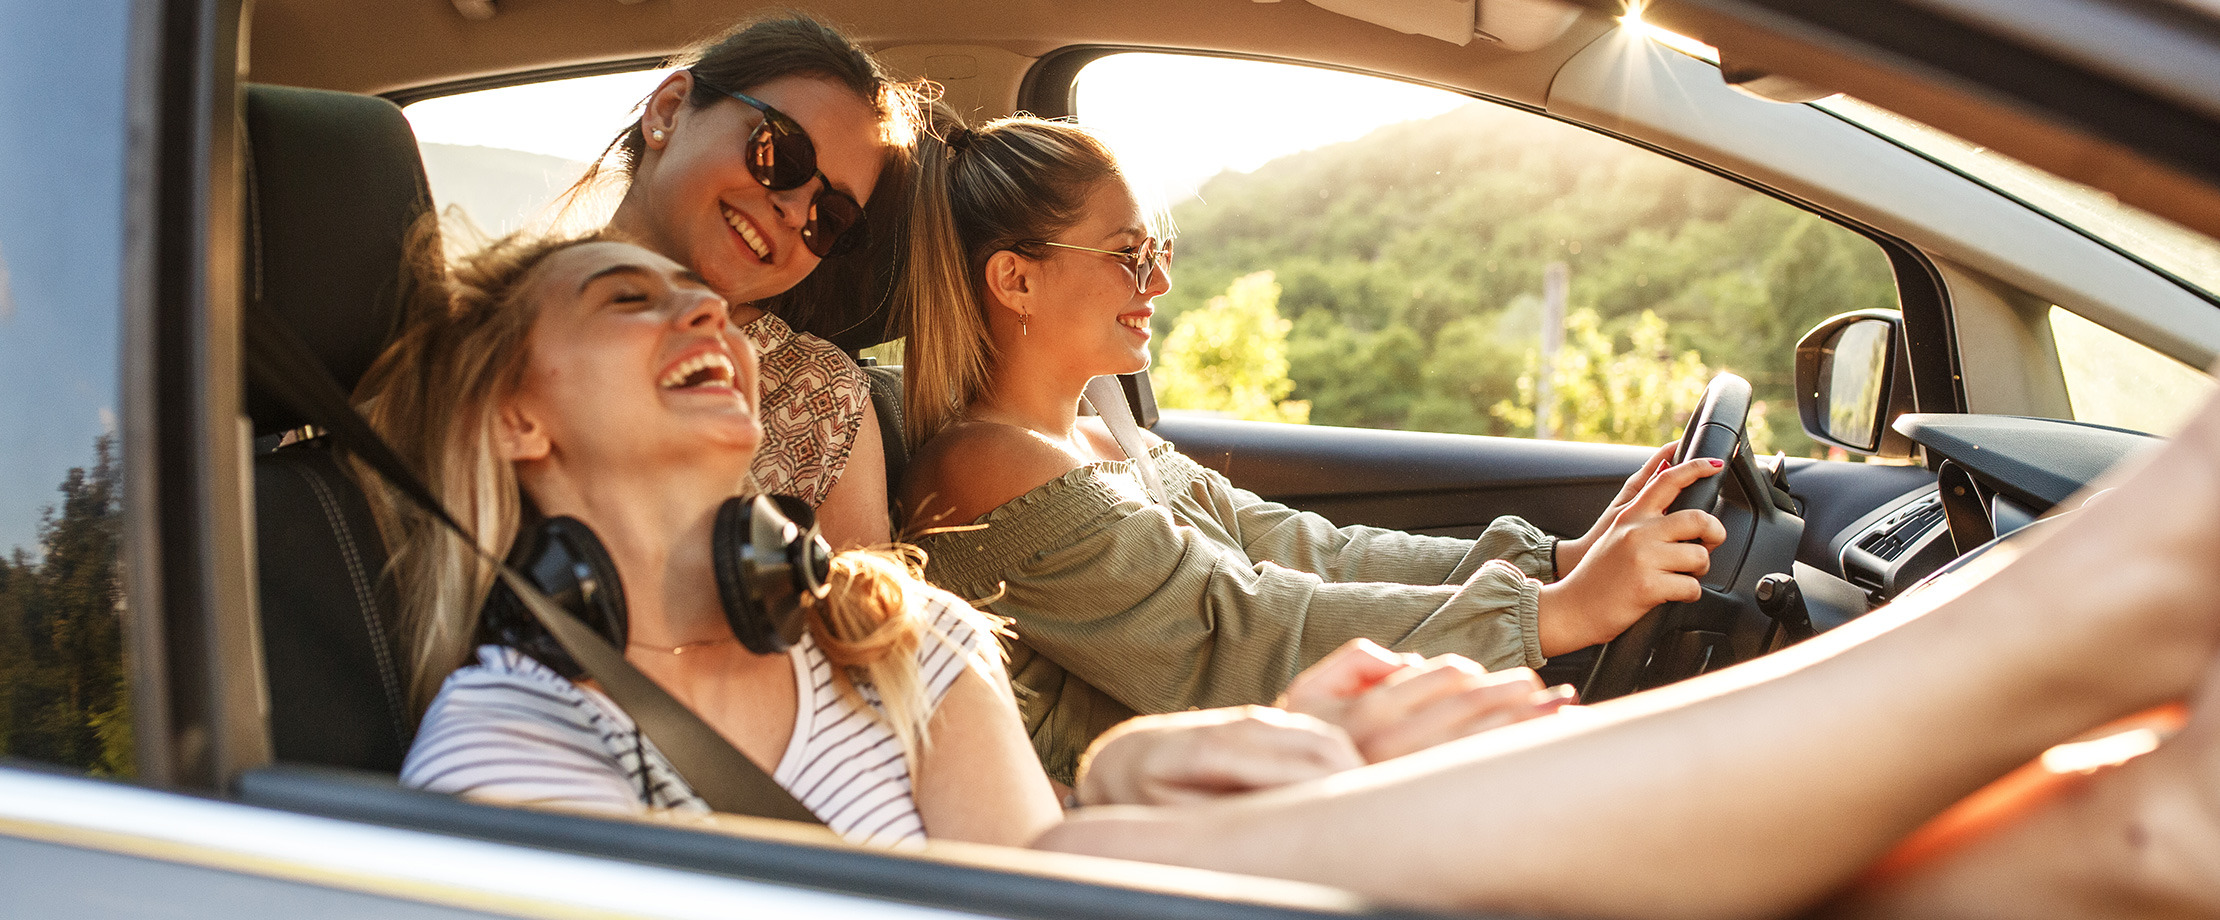 Drei Freundinnen sitzen im Sommer lachend in einem Auto und fahren in einer grünen Landschaft.